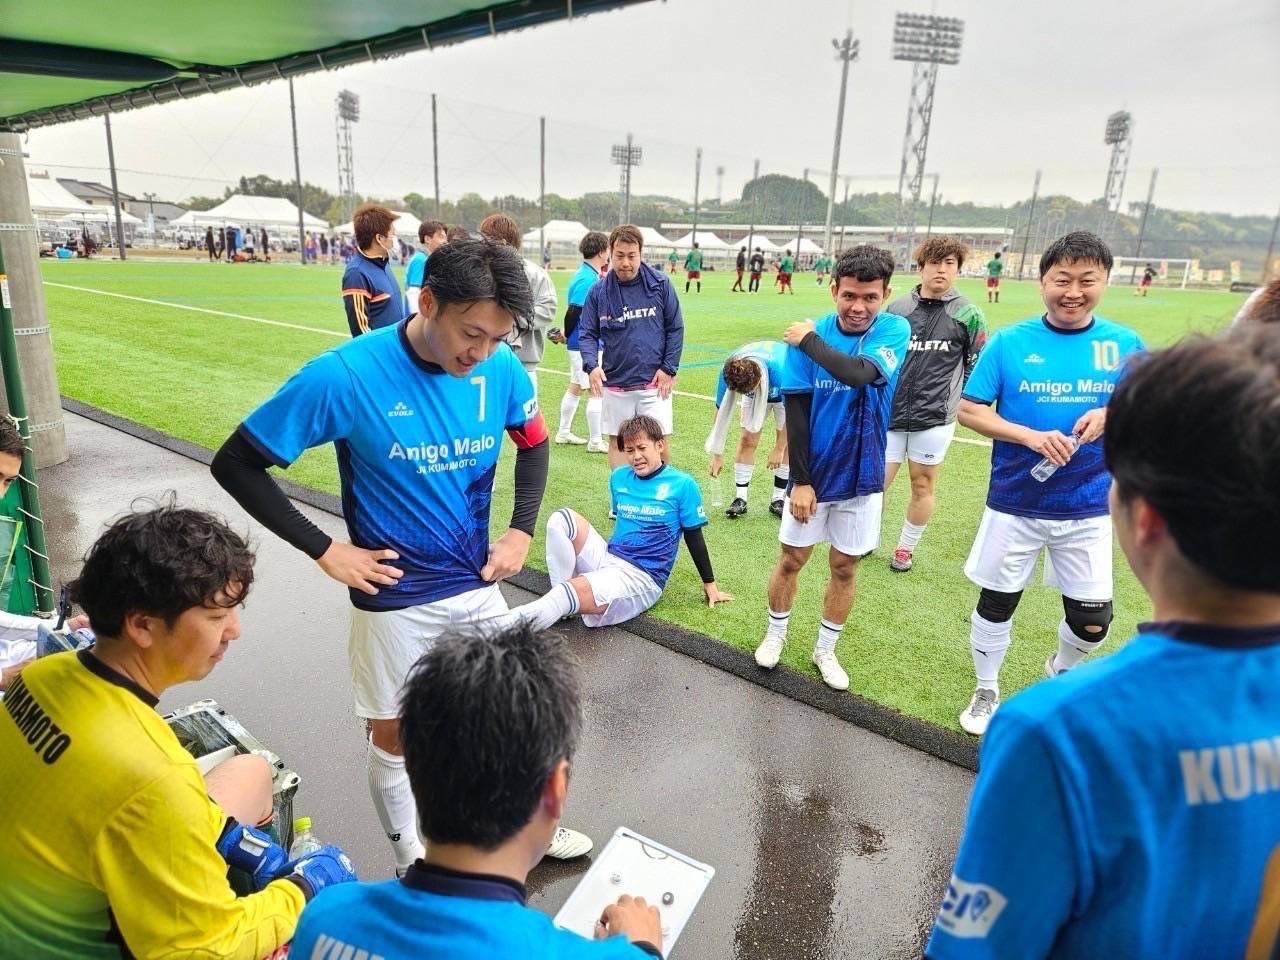 第33回九州地区JCサッカー大会宮崎大会